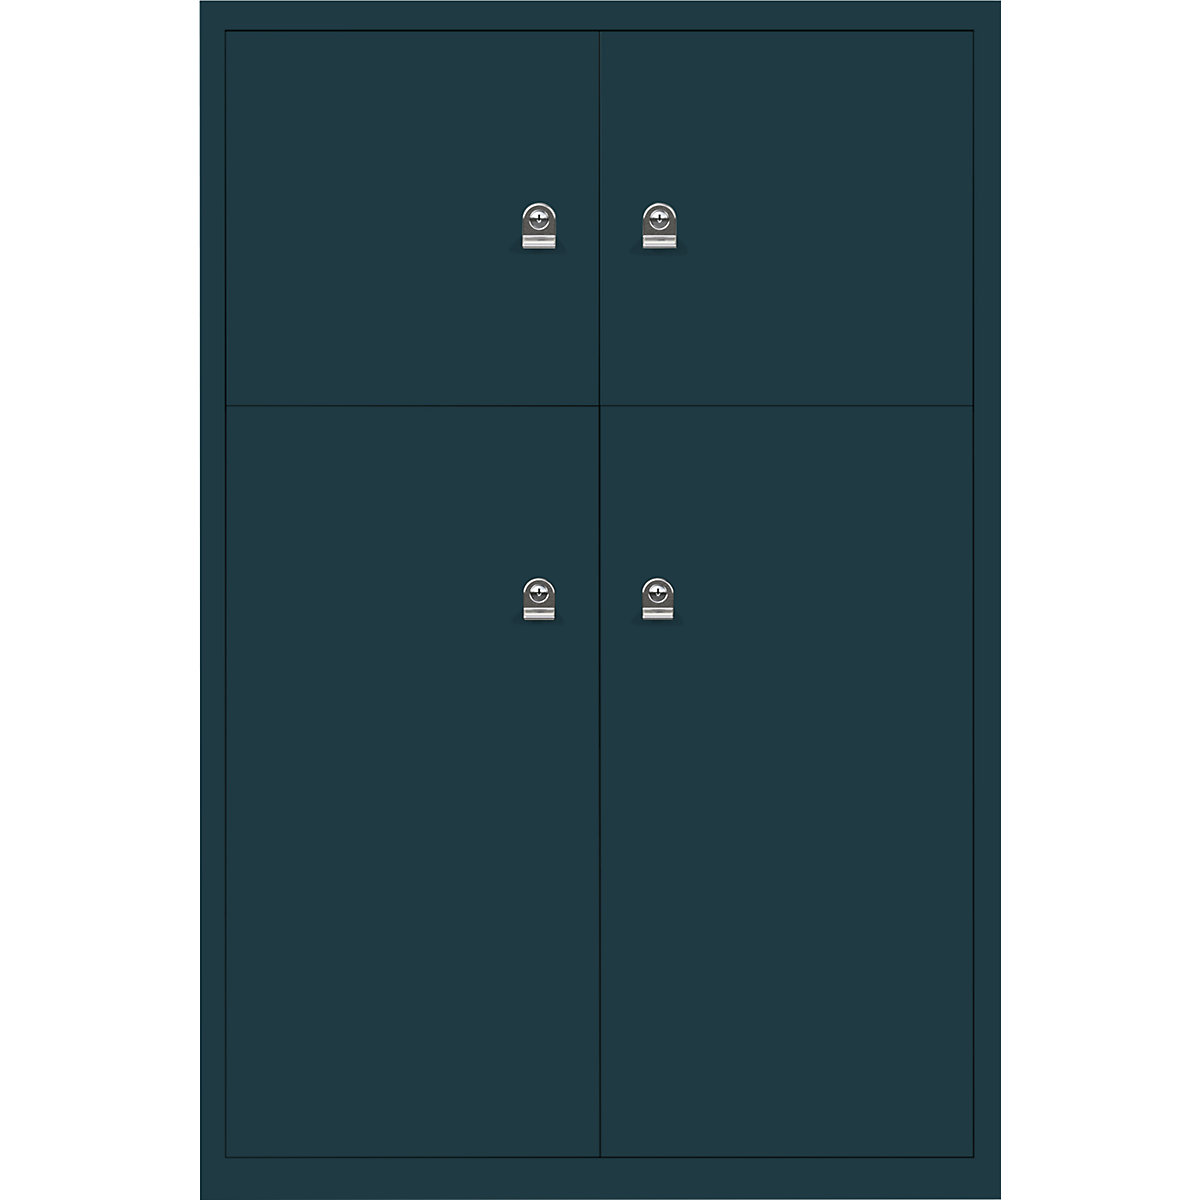 Omara s predelki z zaklepanjem LateralFile™ – BISLEY, 4 predelki z zaklepanjem, višina 2 x 375 mm, 2 x 755 mm, oceansko modre barve-23